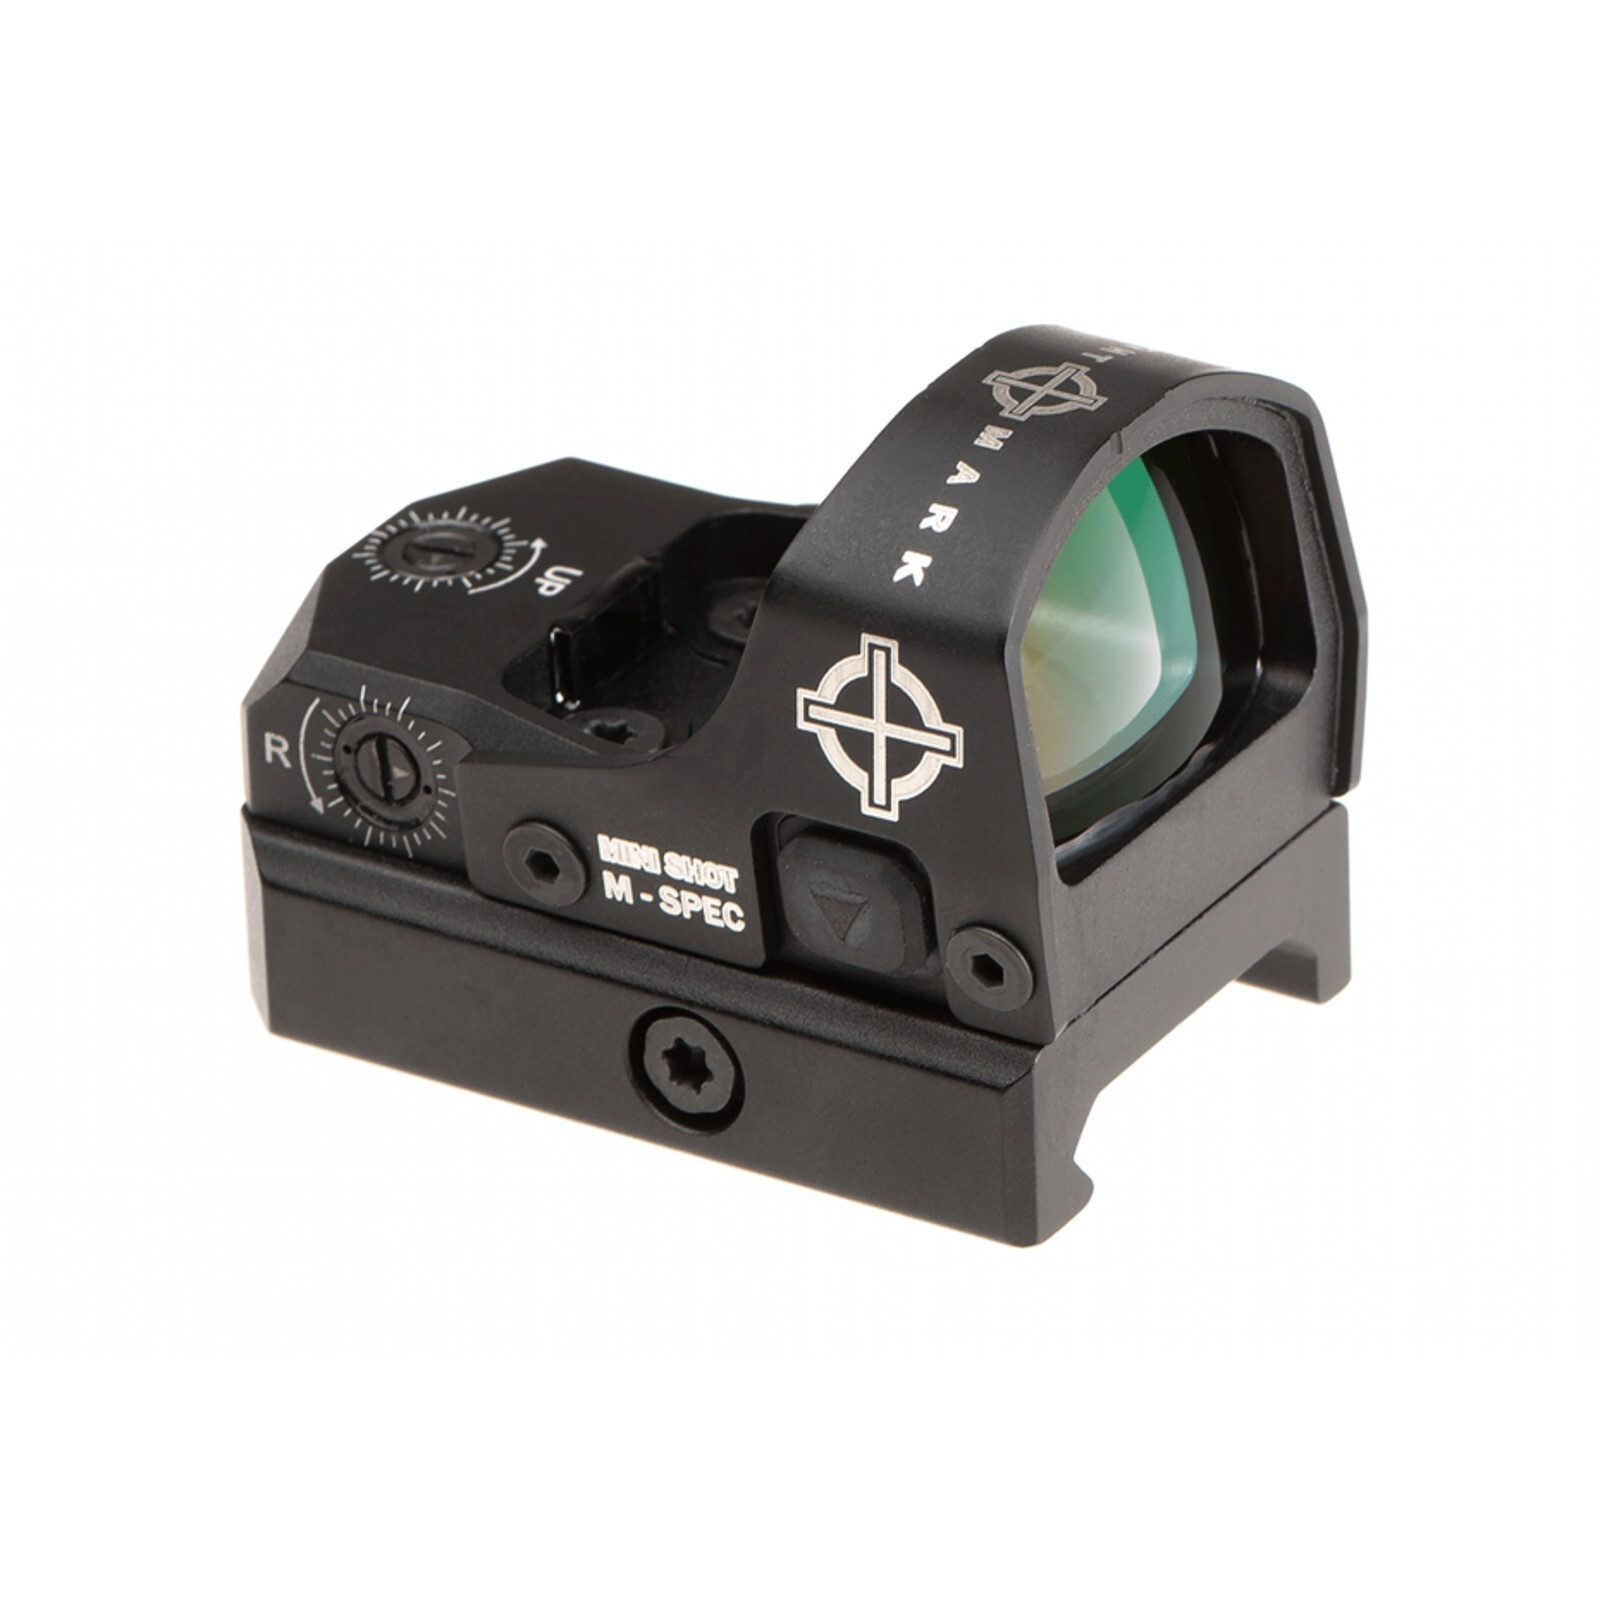 Mini Shot M-Spec FMS Reflex Sight Black